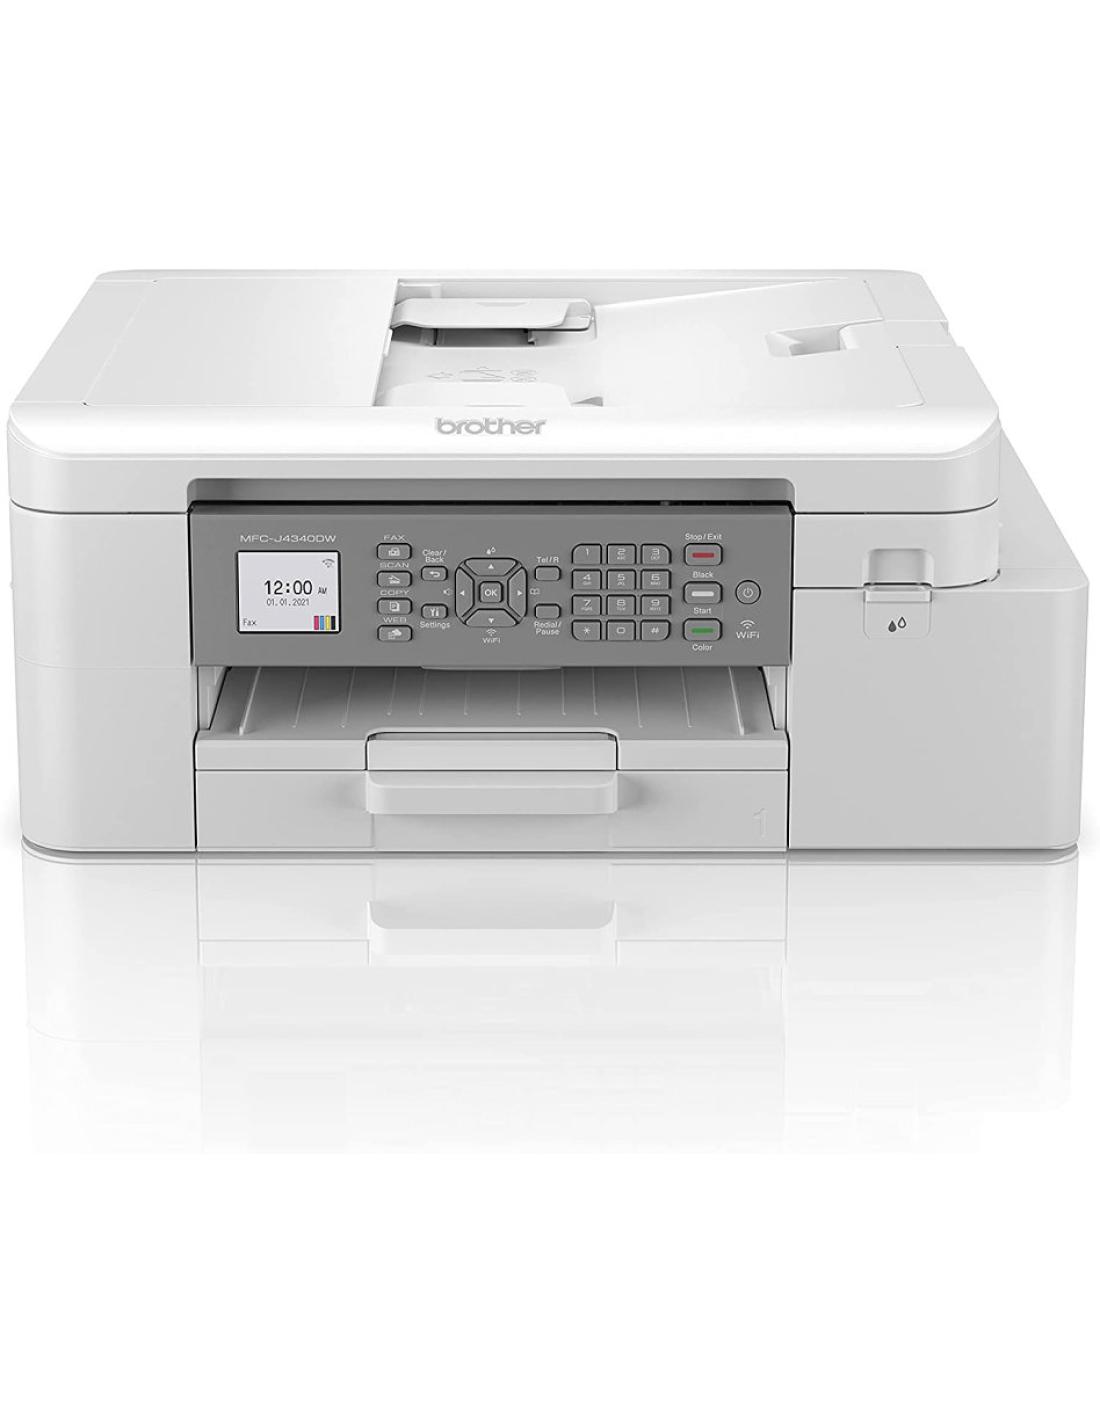 Brother MFC-J4340DWE impresora multifunción Inyección de tinta A4